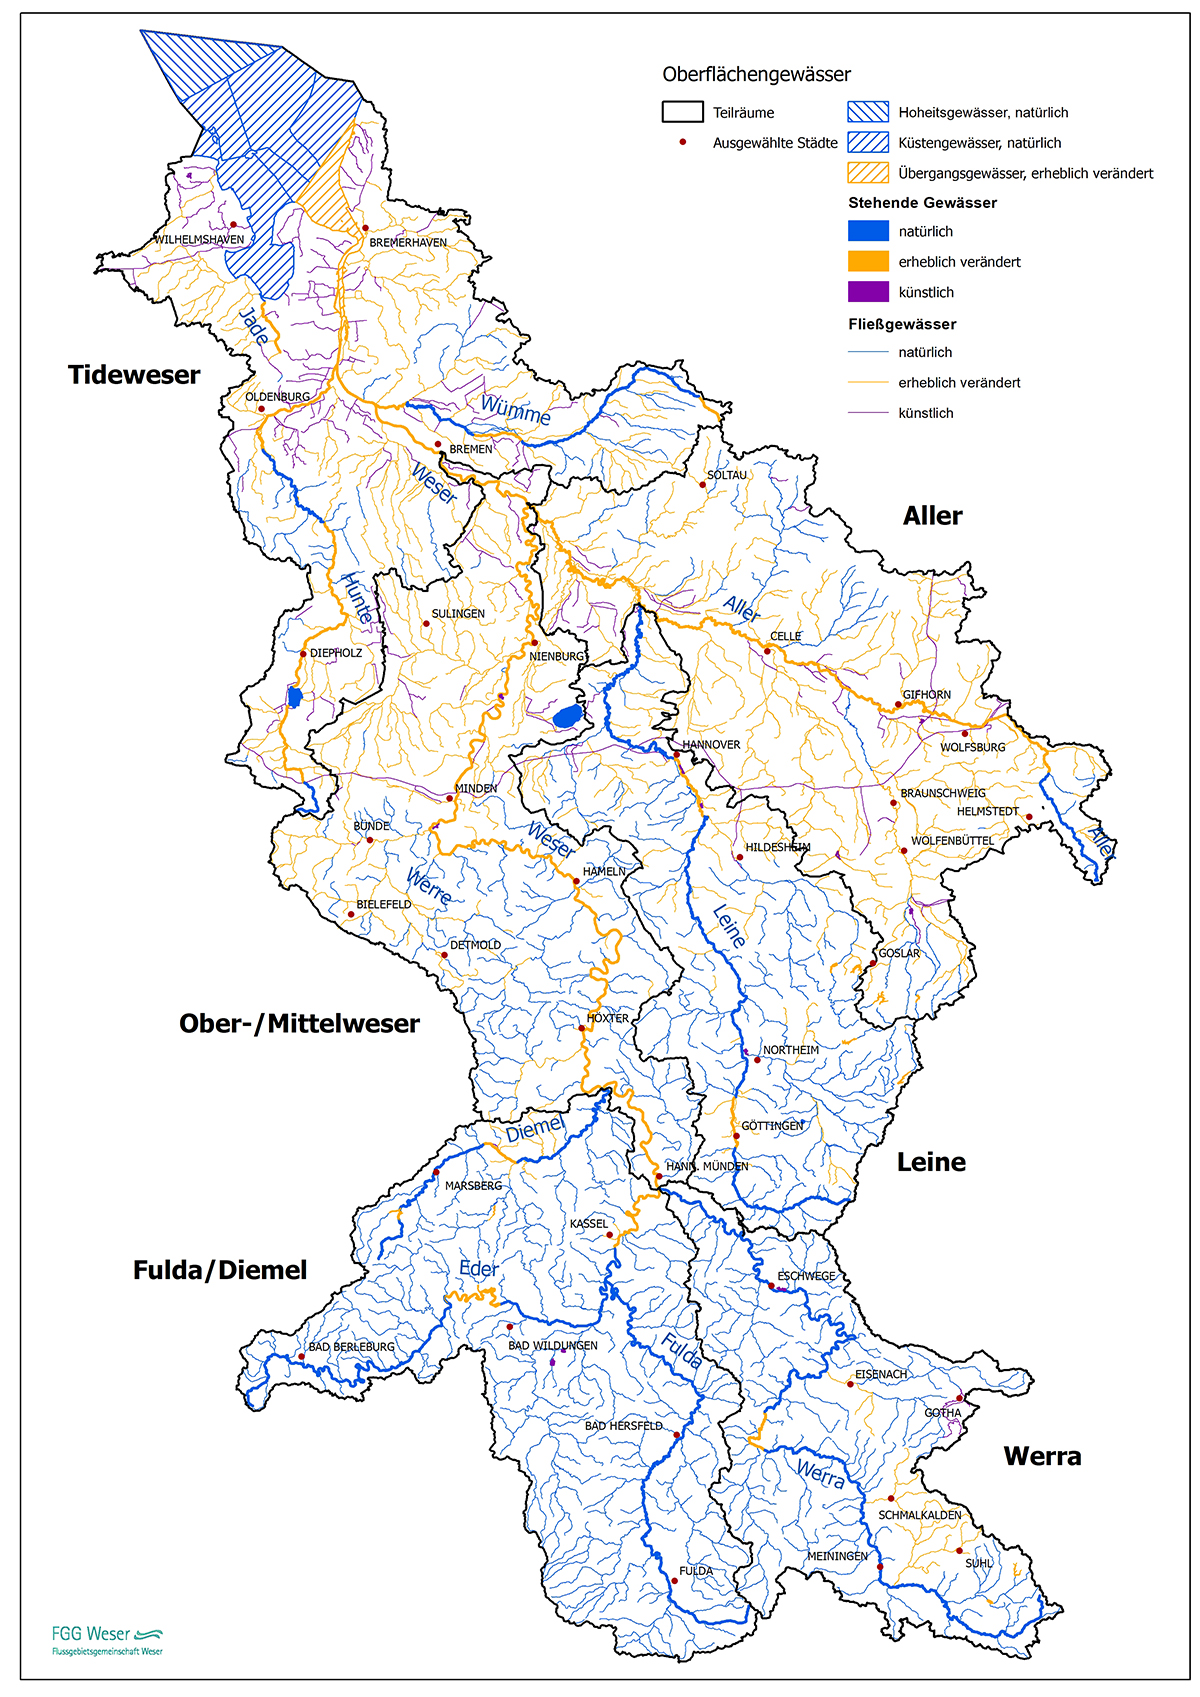 Karte der natürlichen, erheblich veränderten und künstlichen Oberflächengewässer (FGG Weser, 2022)